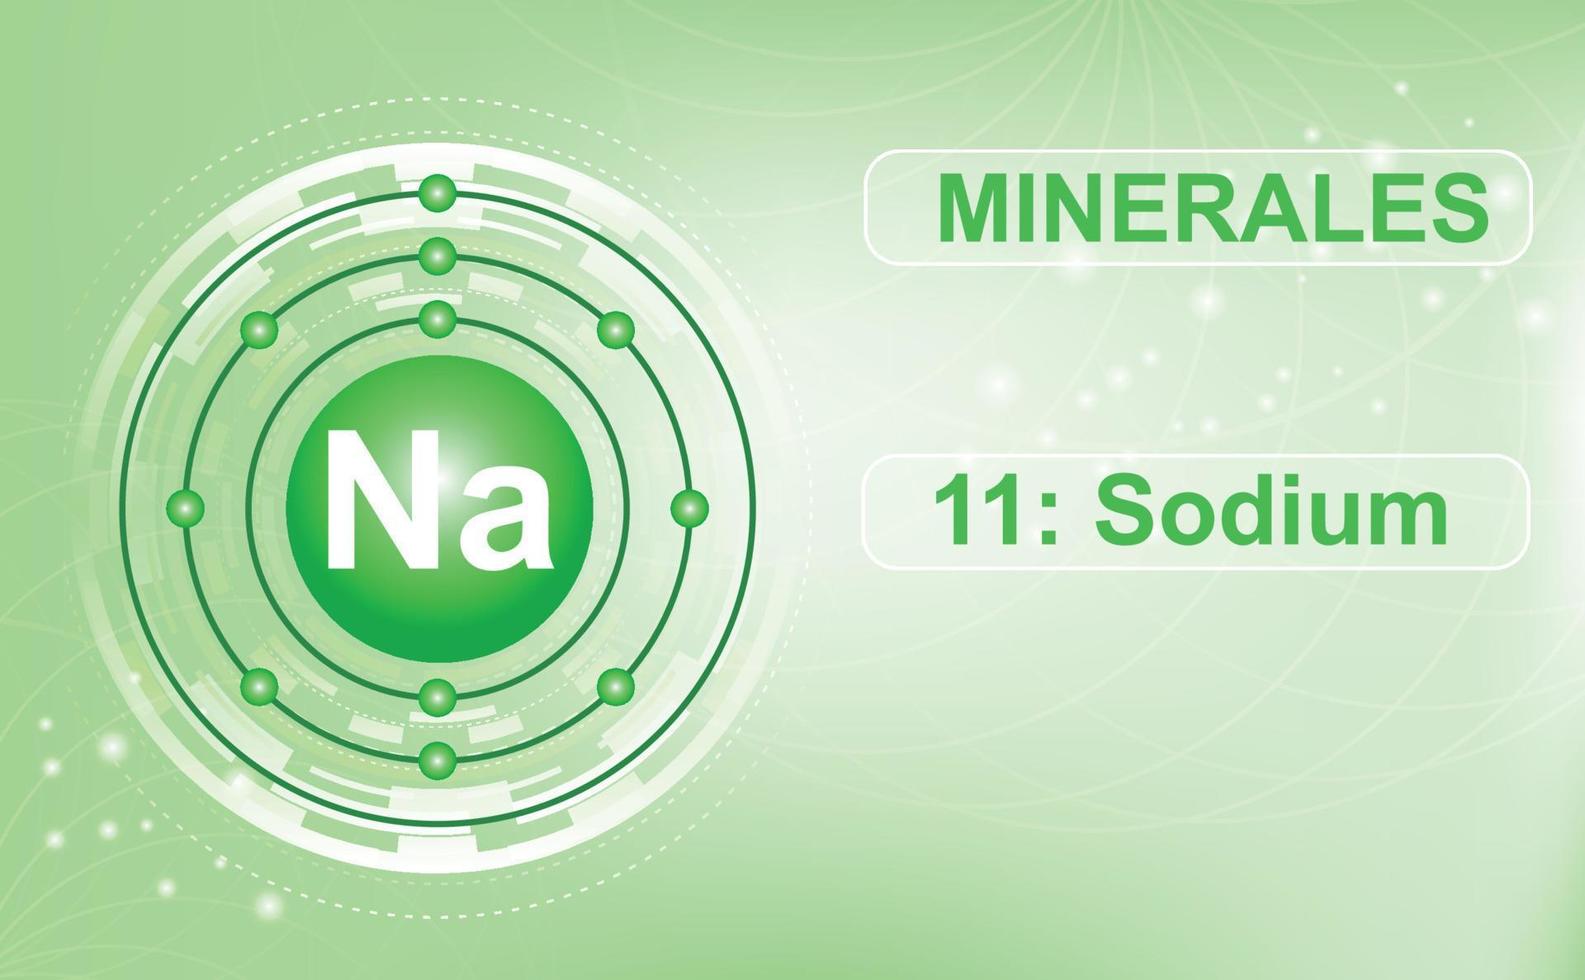 elektronskaldiagram över mineralet och makroelementet na, natrium, det 11:e elementet i grundämnenas periodiska system. abstrakt grön bakgrund. informationsaffisch. vektor illustration